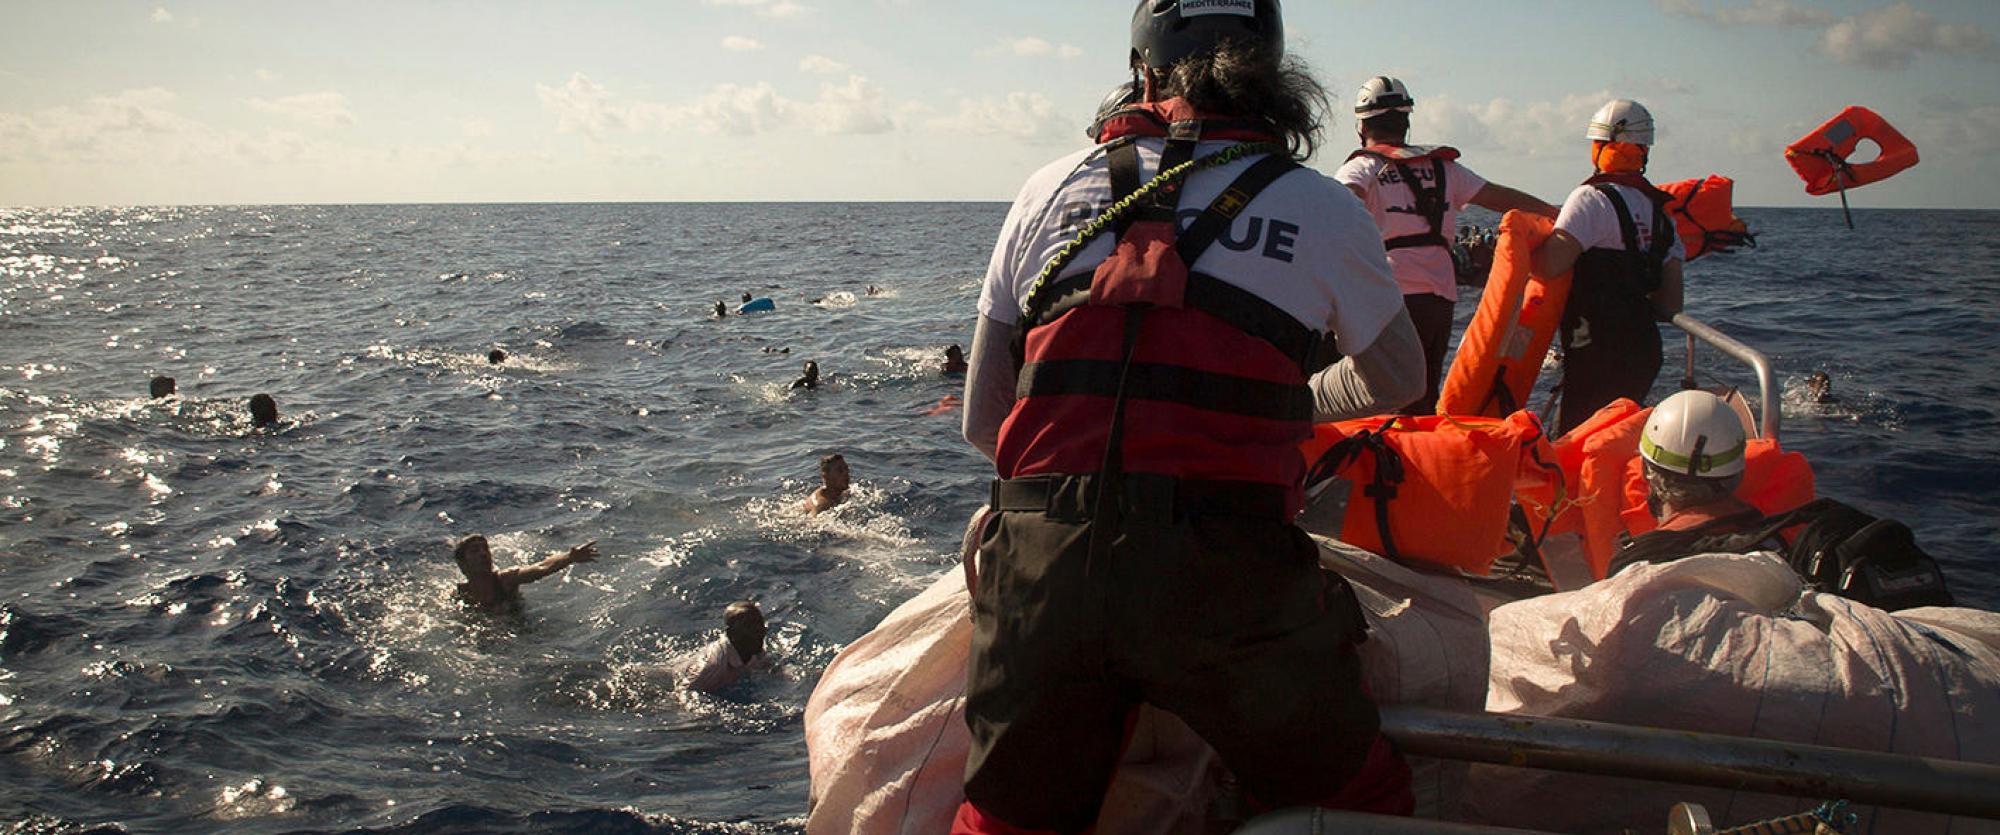 Lors de ce sauvetage effectué le 1er novembre 2017, plus de 500 personnes ont été mises en sécurité à bord d'Aquarius, mais un nombre inconnu de personnes disparues ont été déclarées présumées noyées.